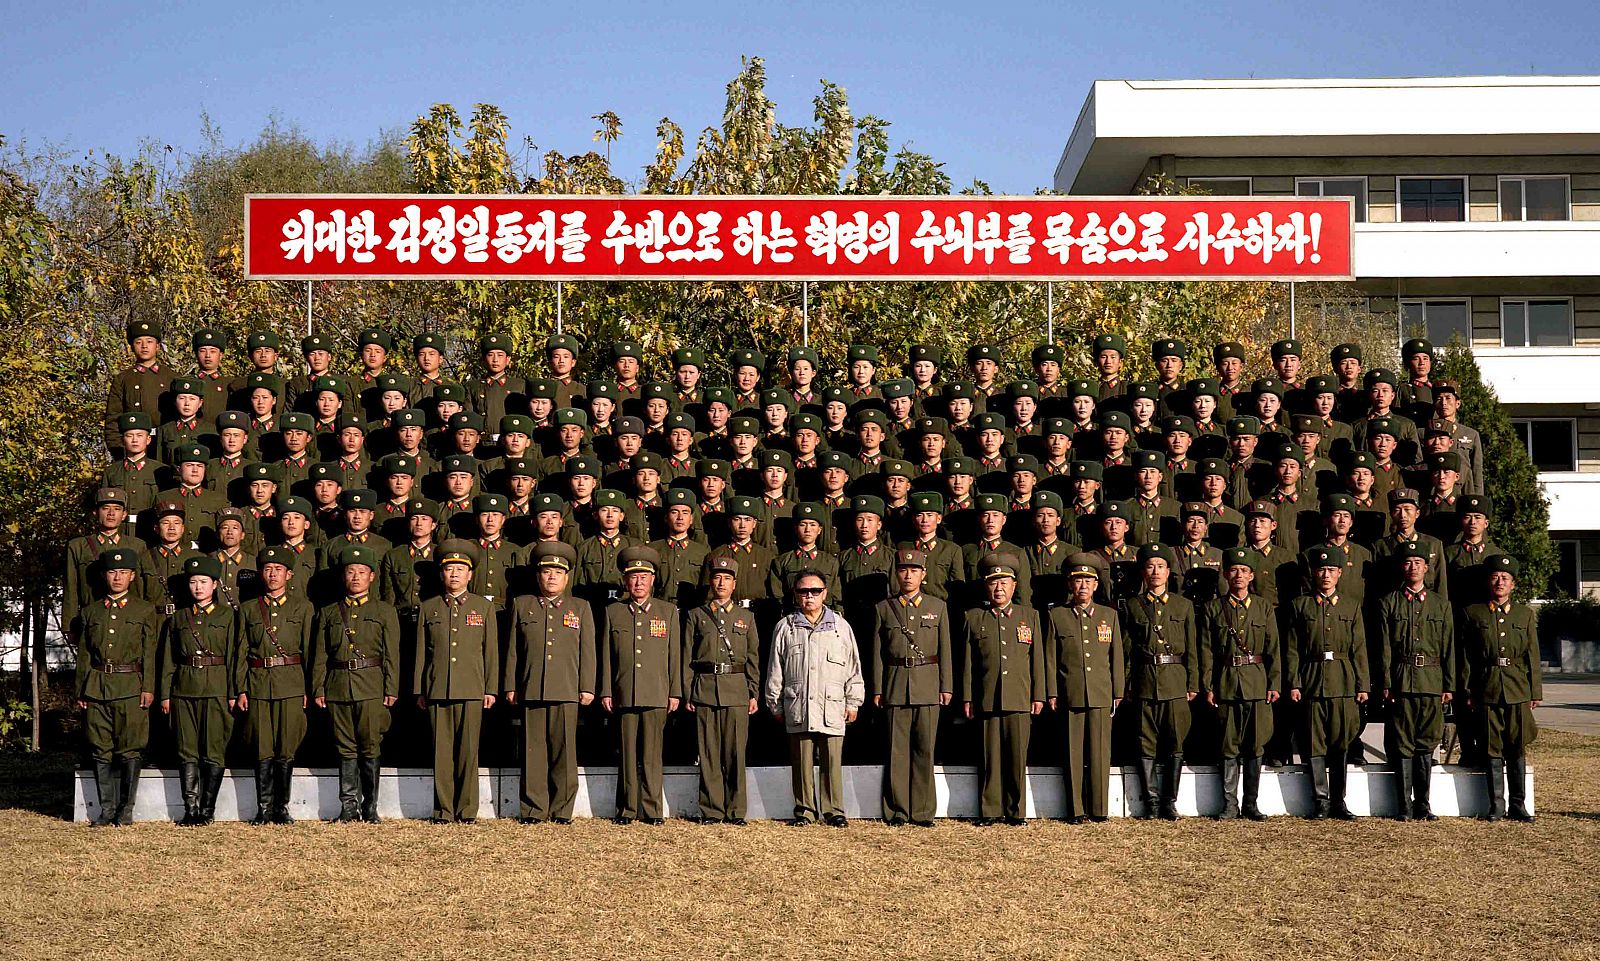 Kim Jong Il posa con una unidad militar en una fotografía hecha pública por las autoridades norcoreanas y que podía estar trucada.